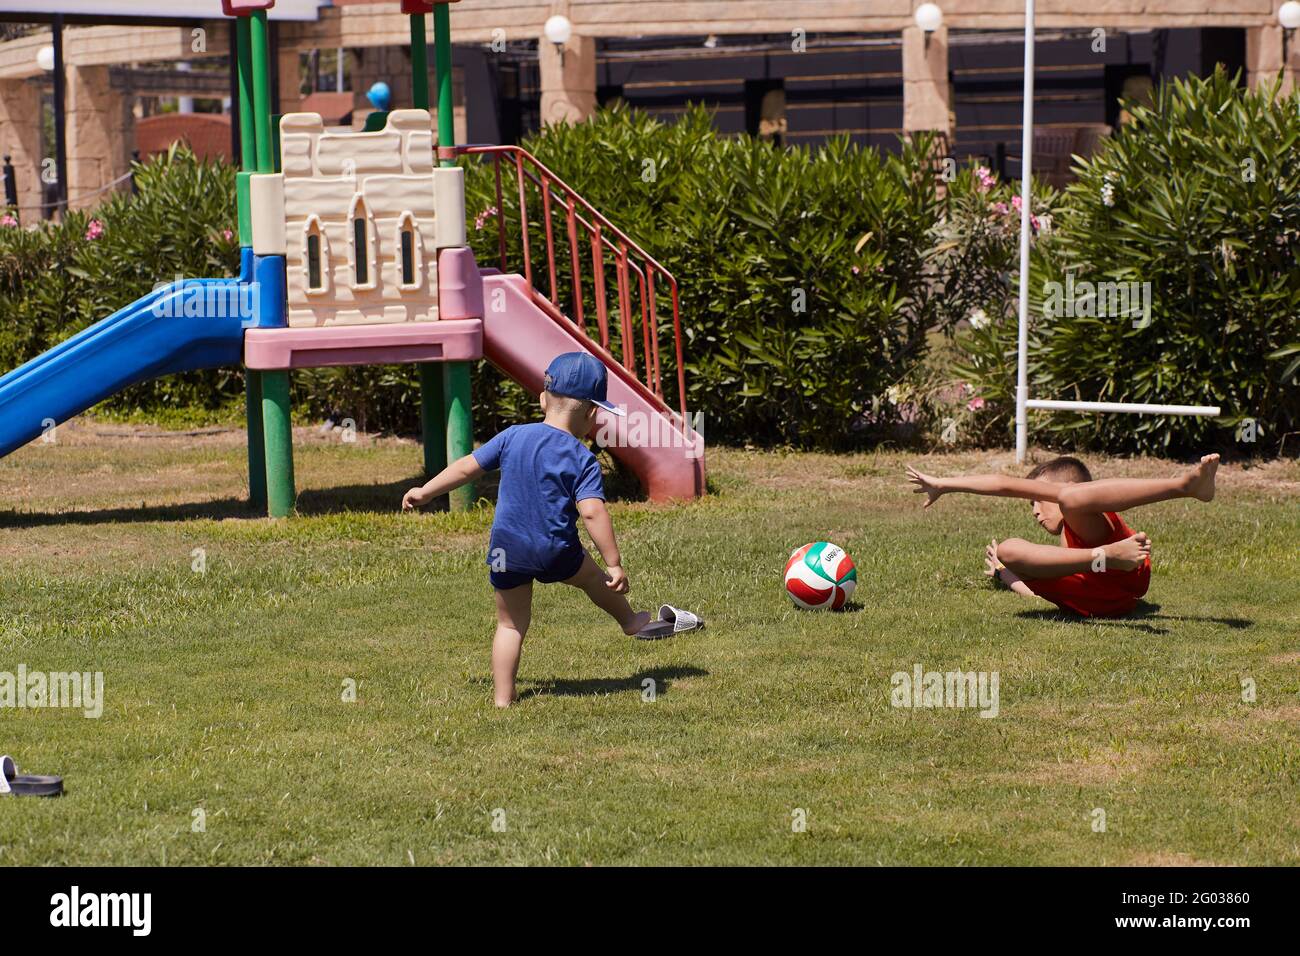 Kemer, Türkei - Mai, 21: Kleinkind und Teenager spielen bei sonnigem Wetter auf grünem, frischem Rasen Fußball. Konzept von sozialer Distanz, Sommerspaß und Urlaub. Hochwertige Fotos Stockfoto